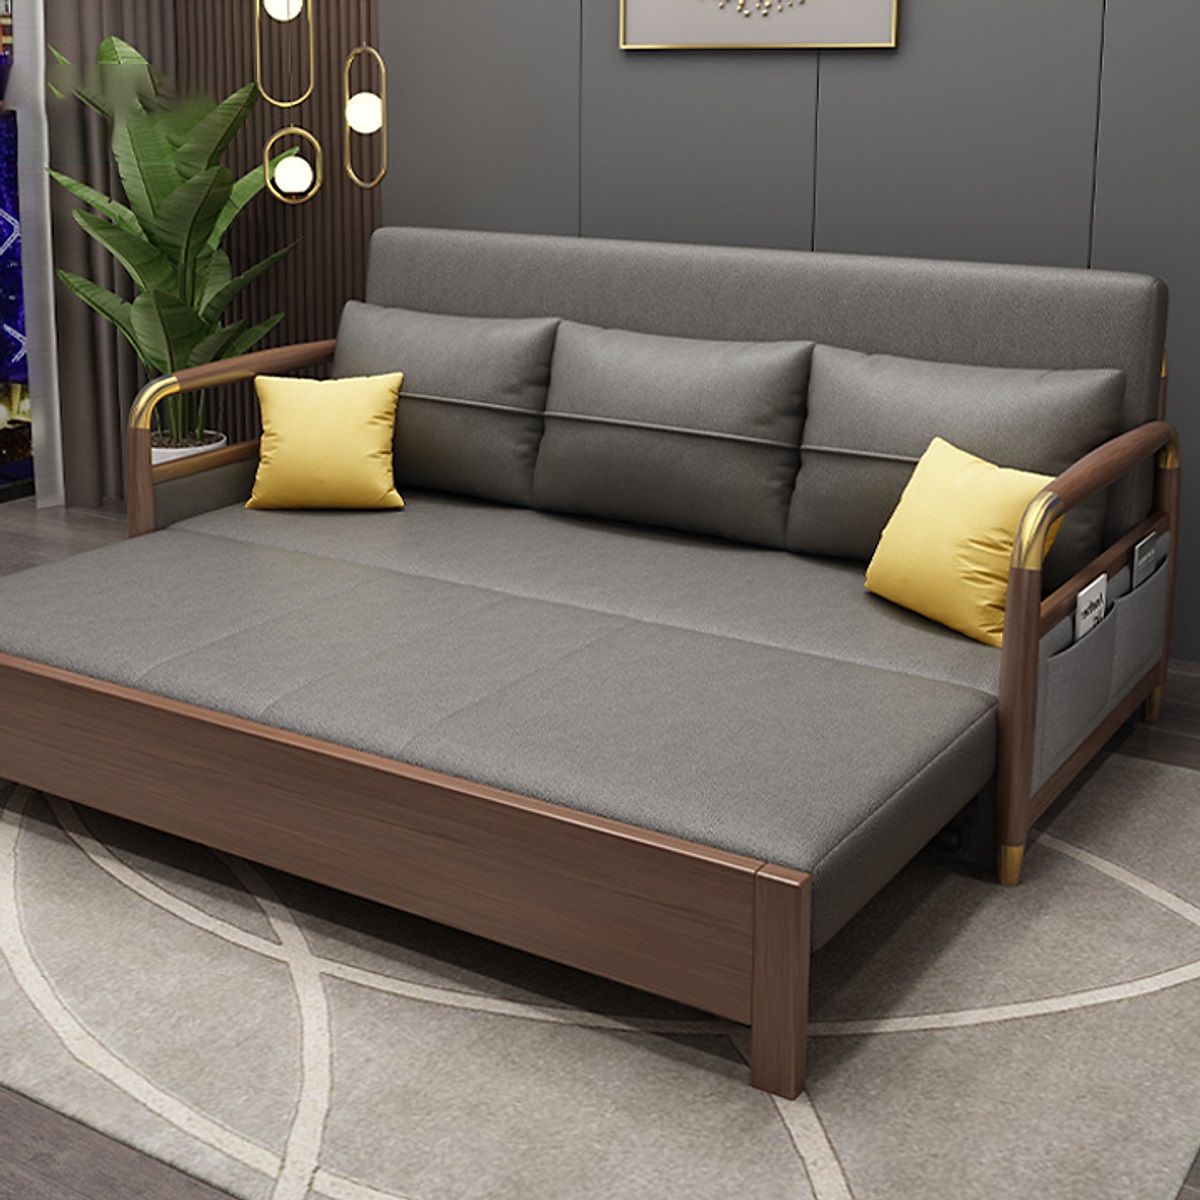 sofa giường bằng gỗ nâu xám